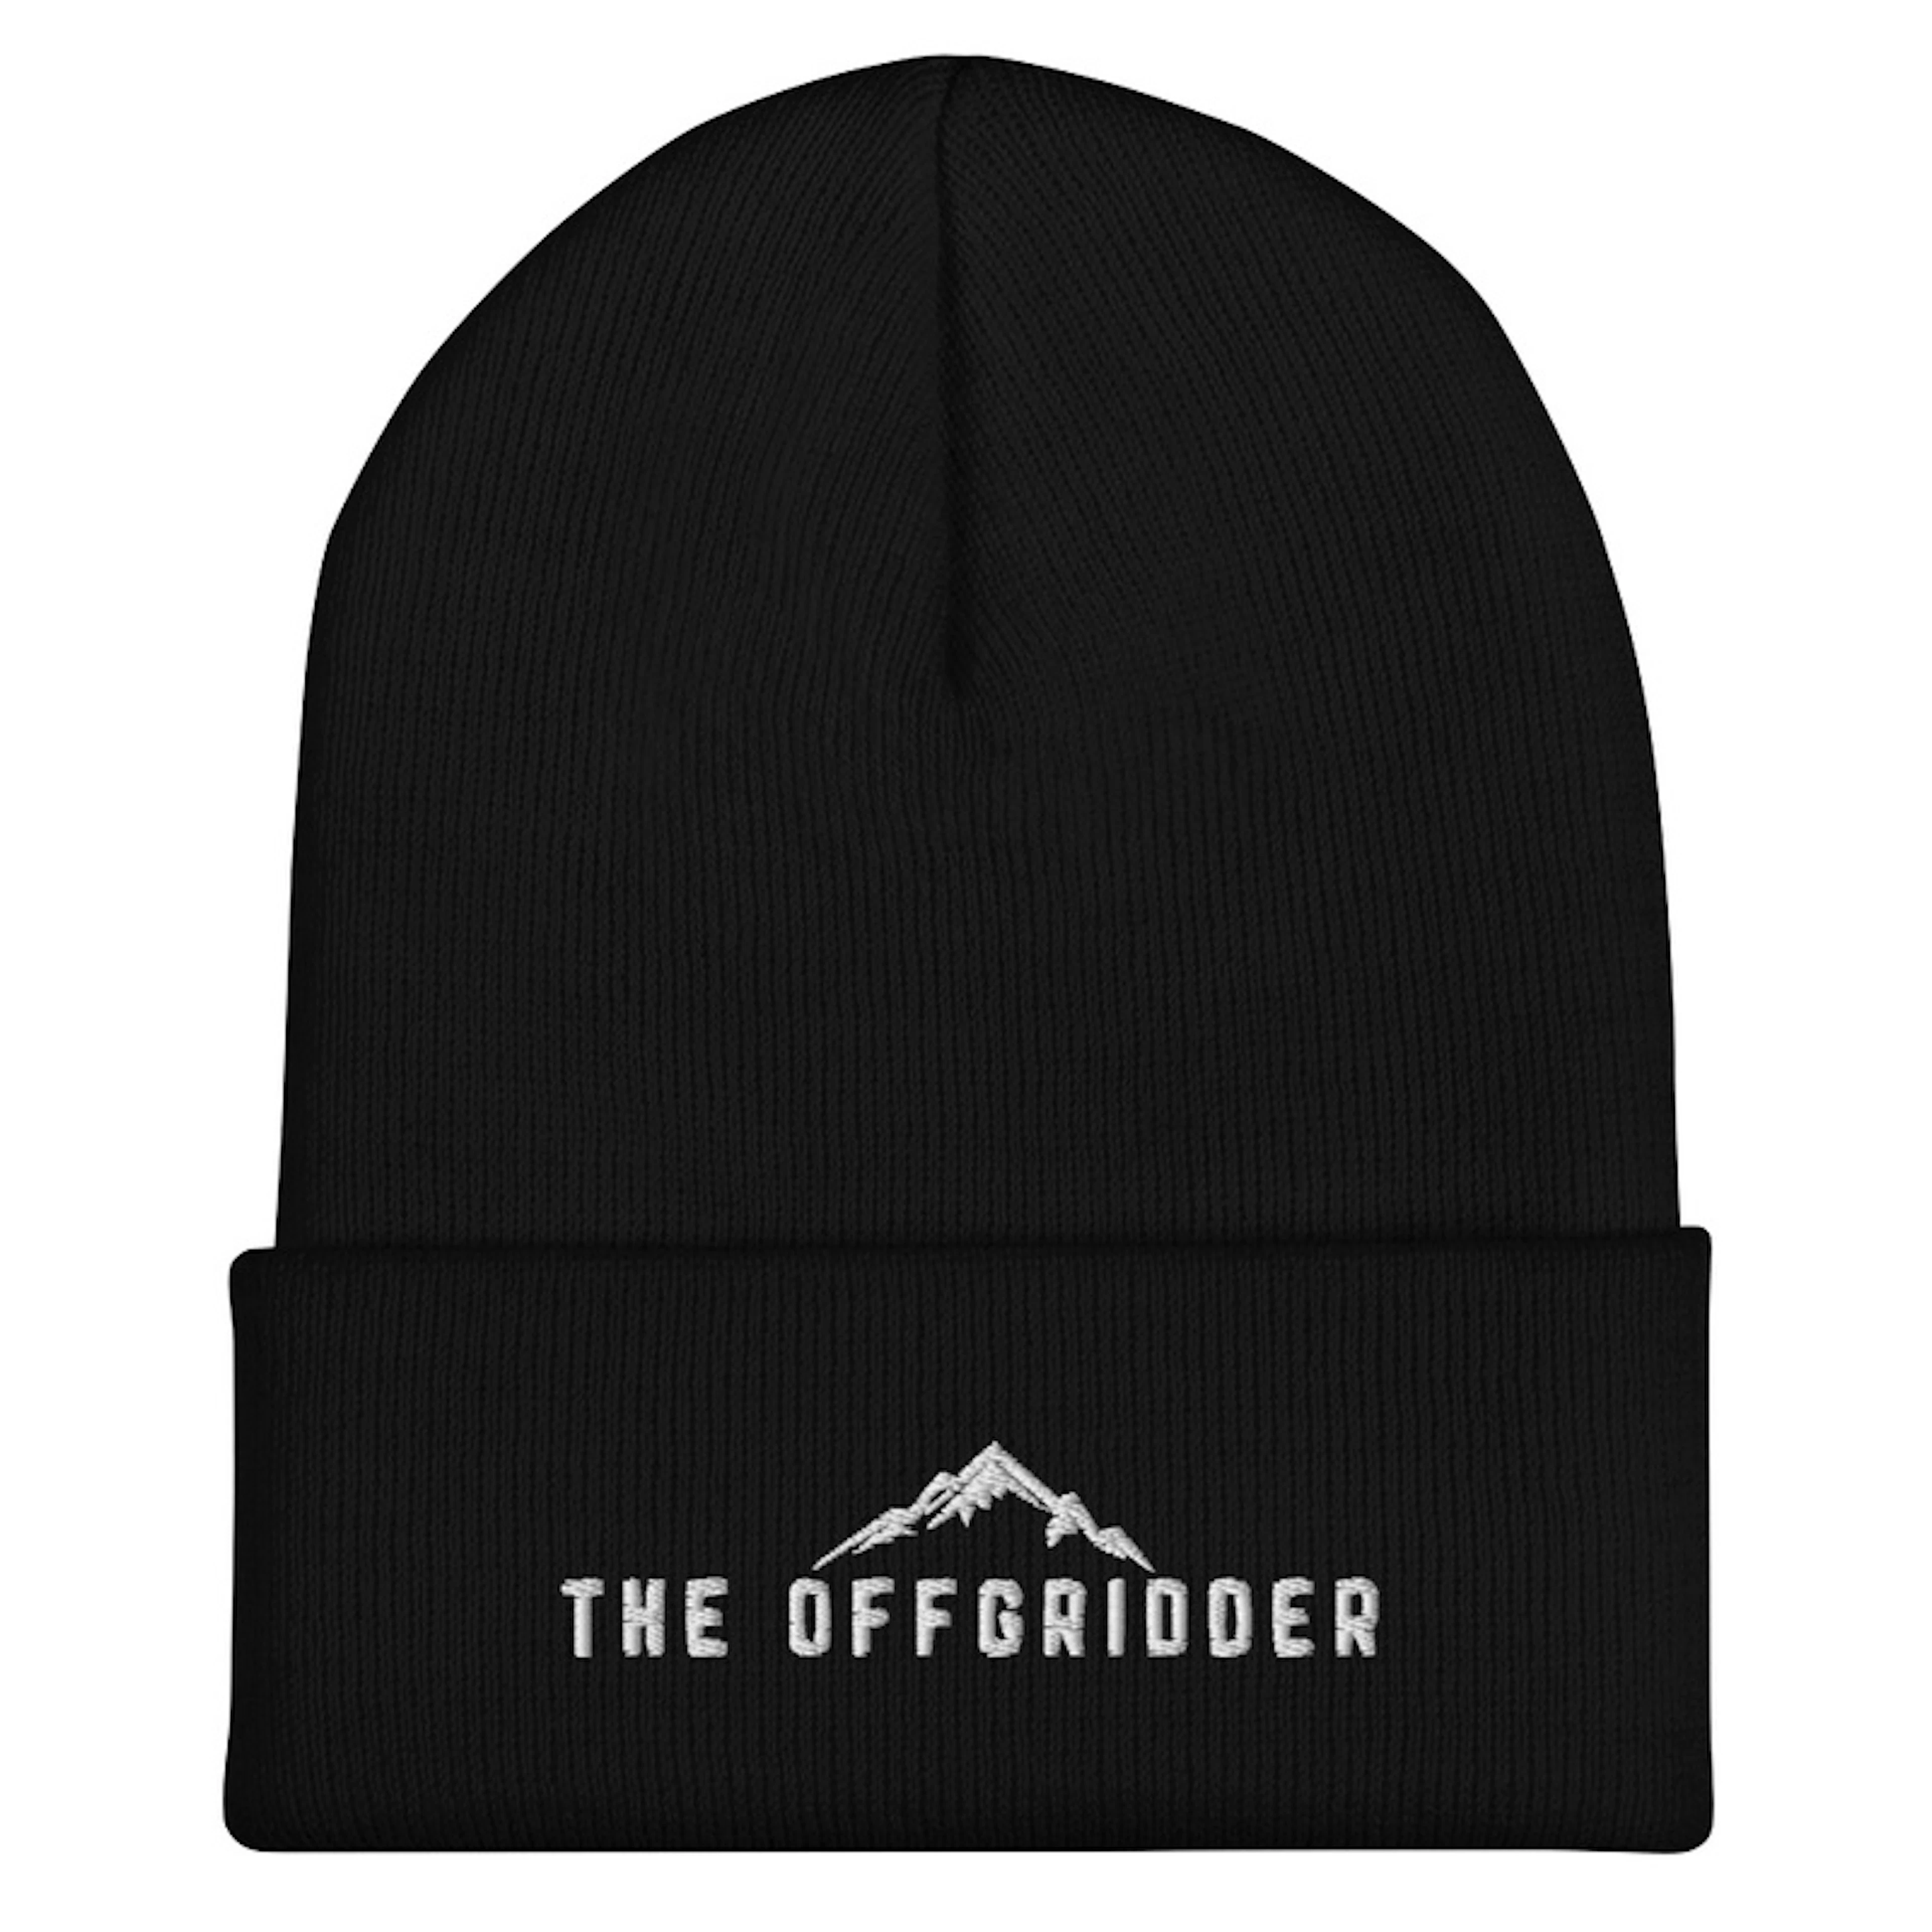 The Offgridder